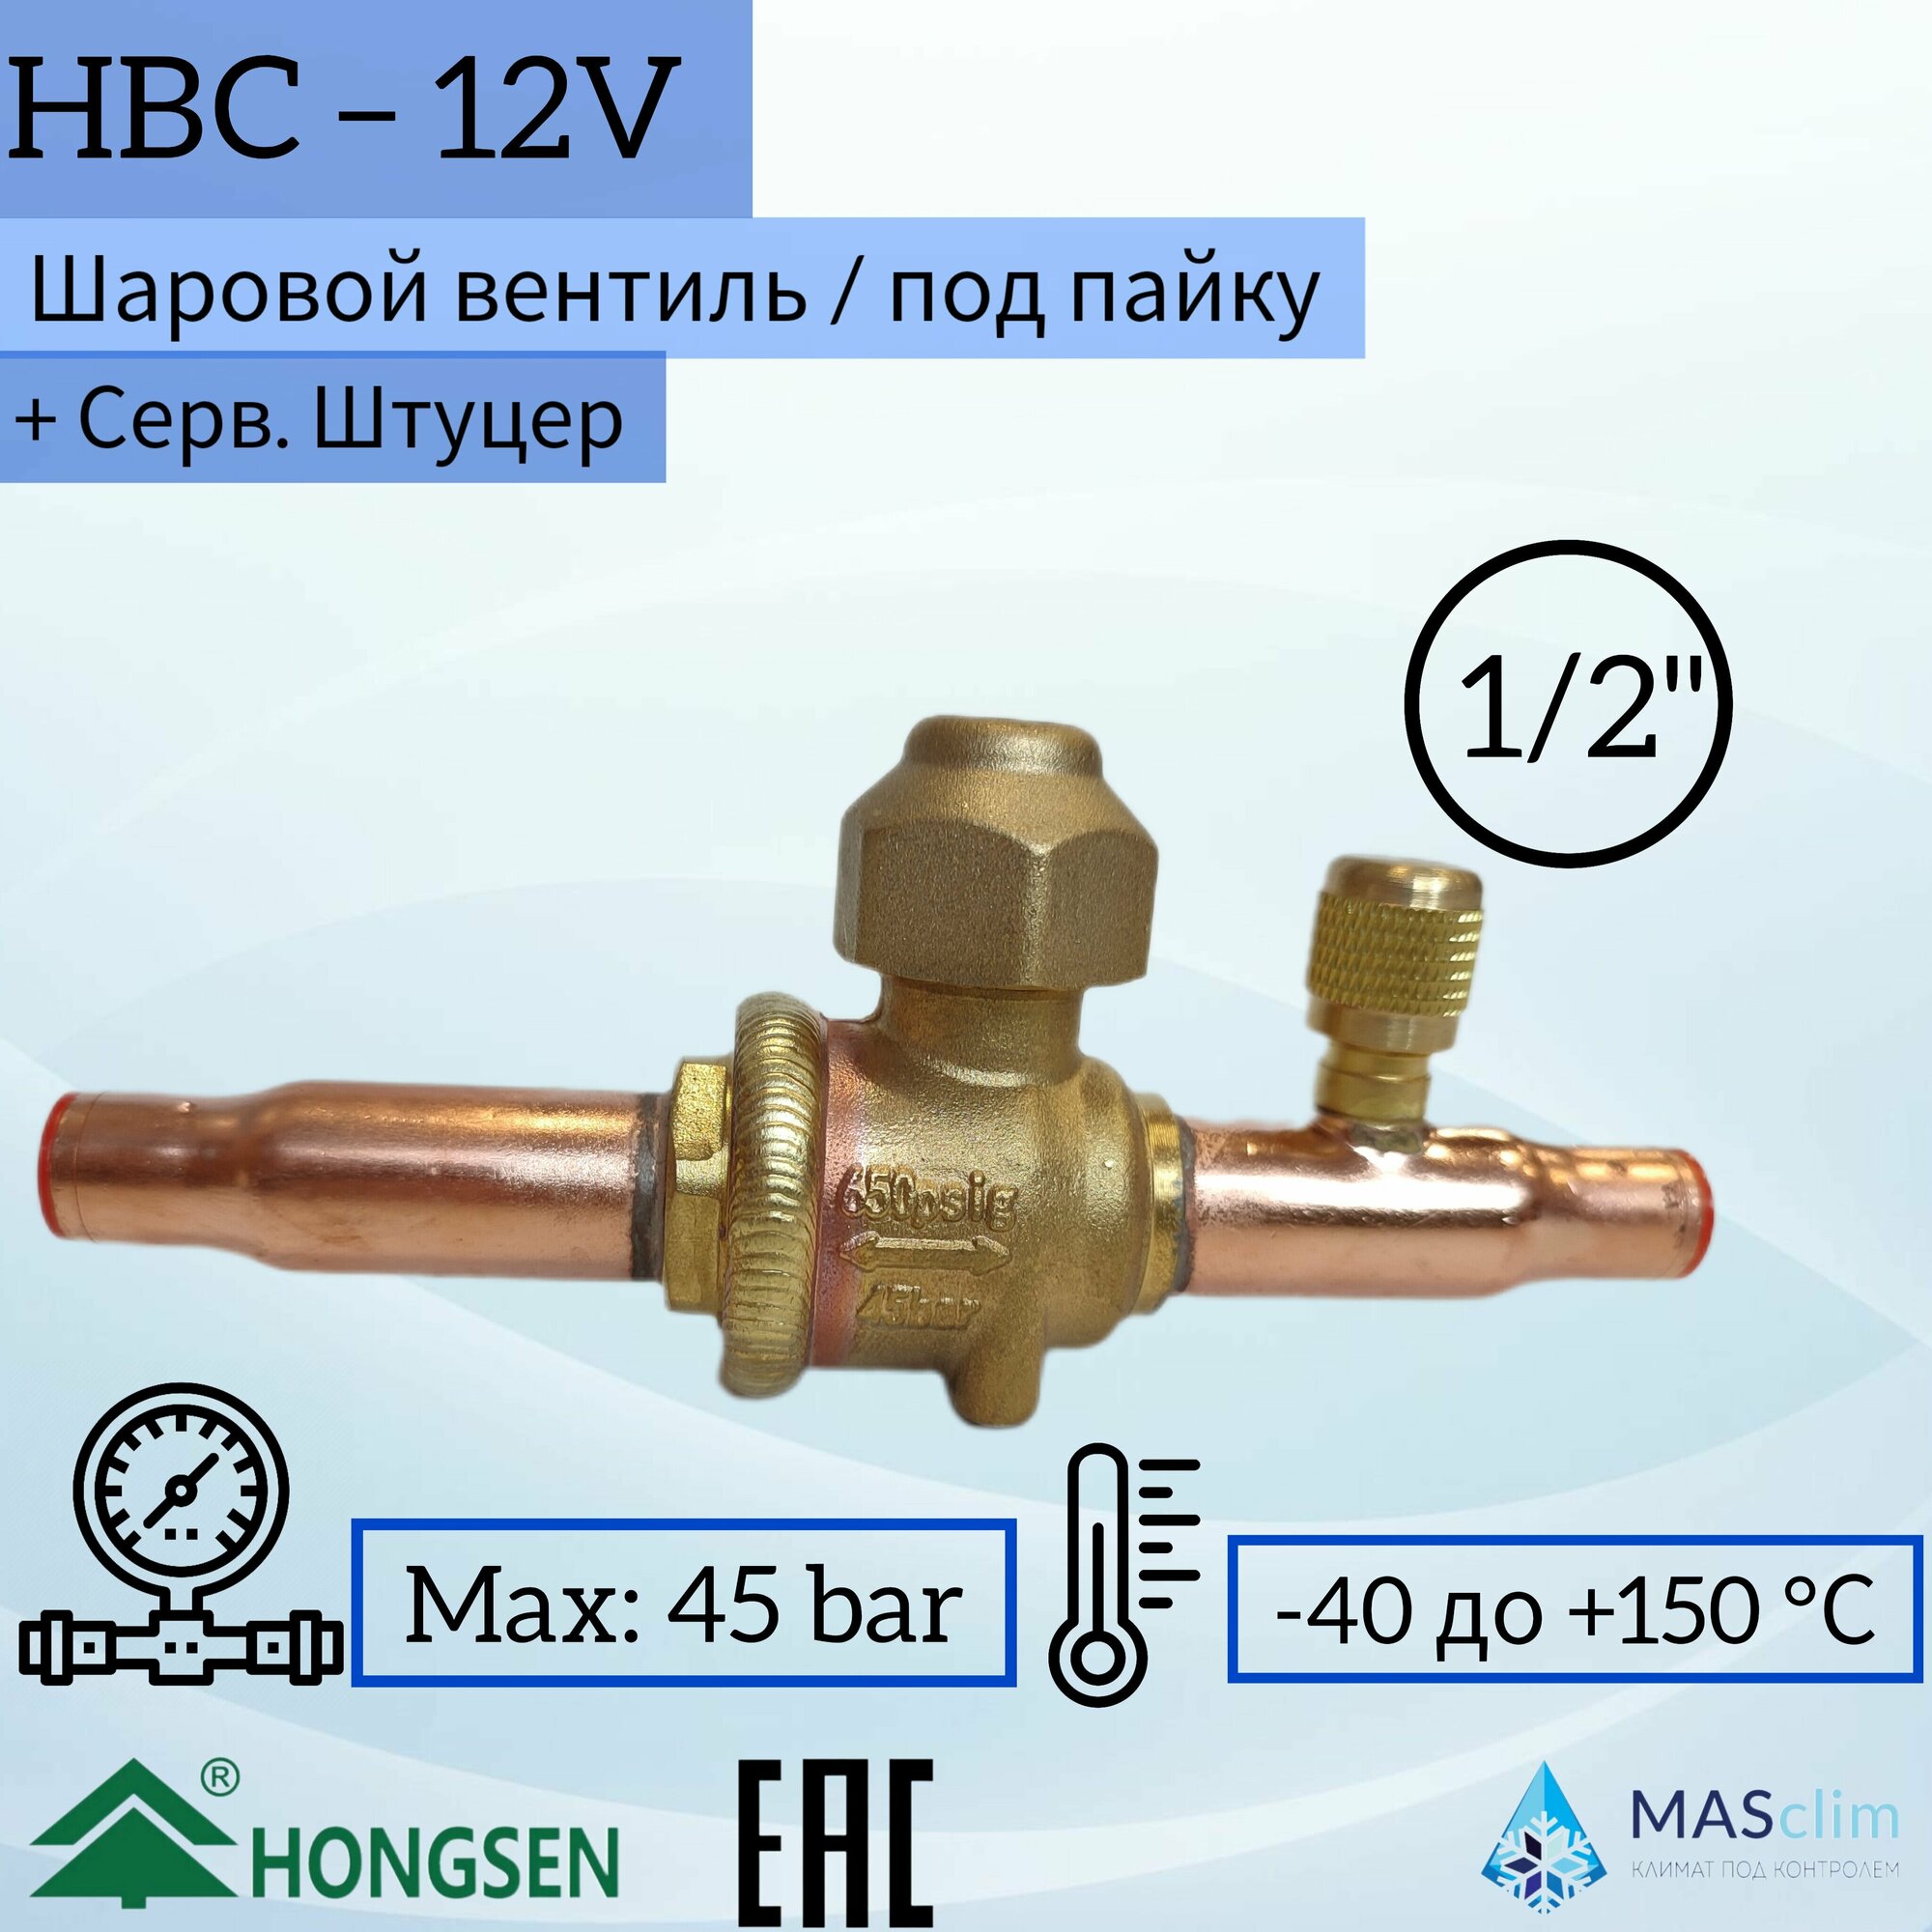 Шаровой кран Hongsen HBC-12V, 1/2, пайка, сервисный штуцер